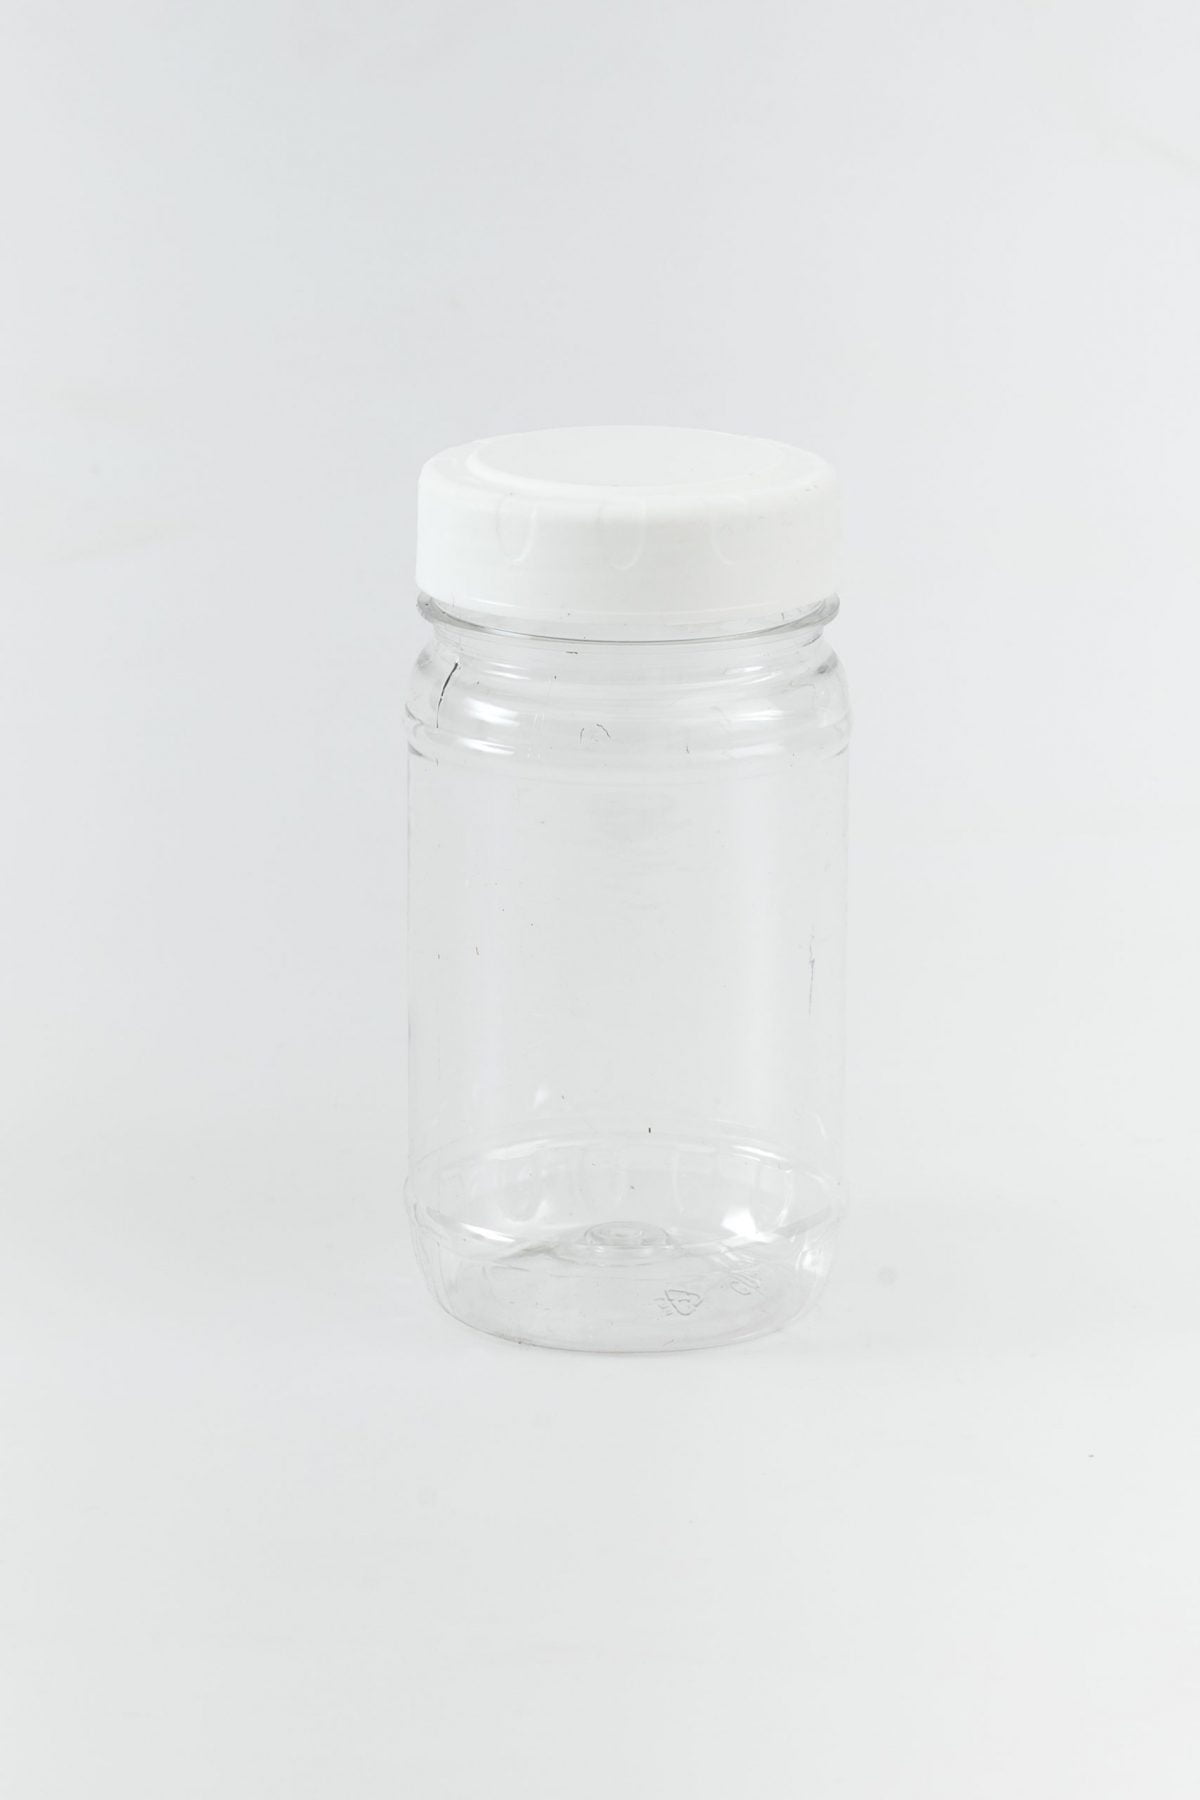 Cherry/Honey PET Jar 350g (500g Bath Salt)